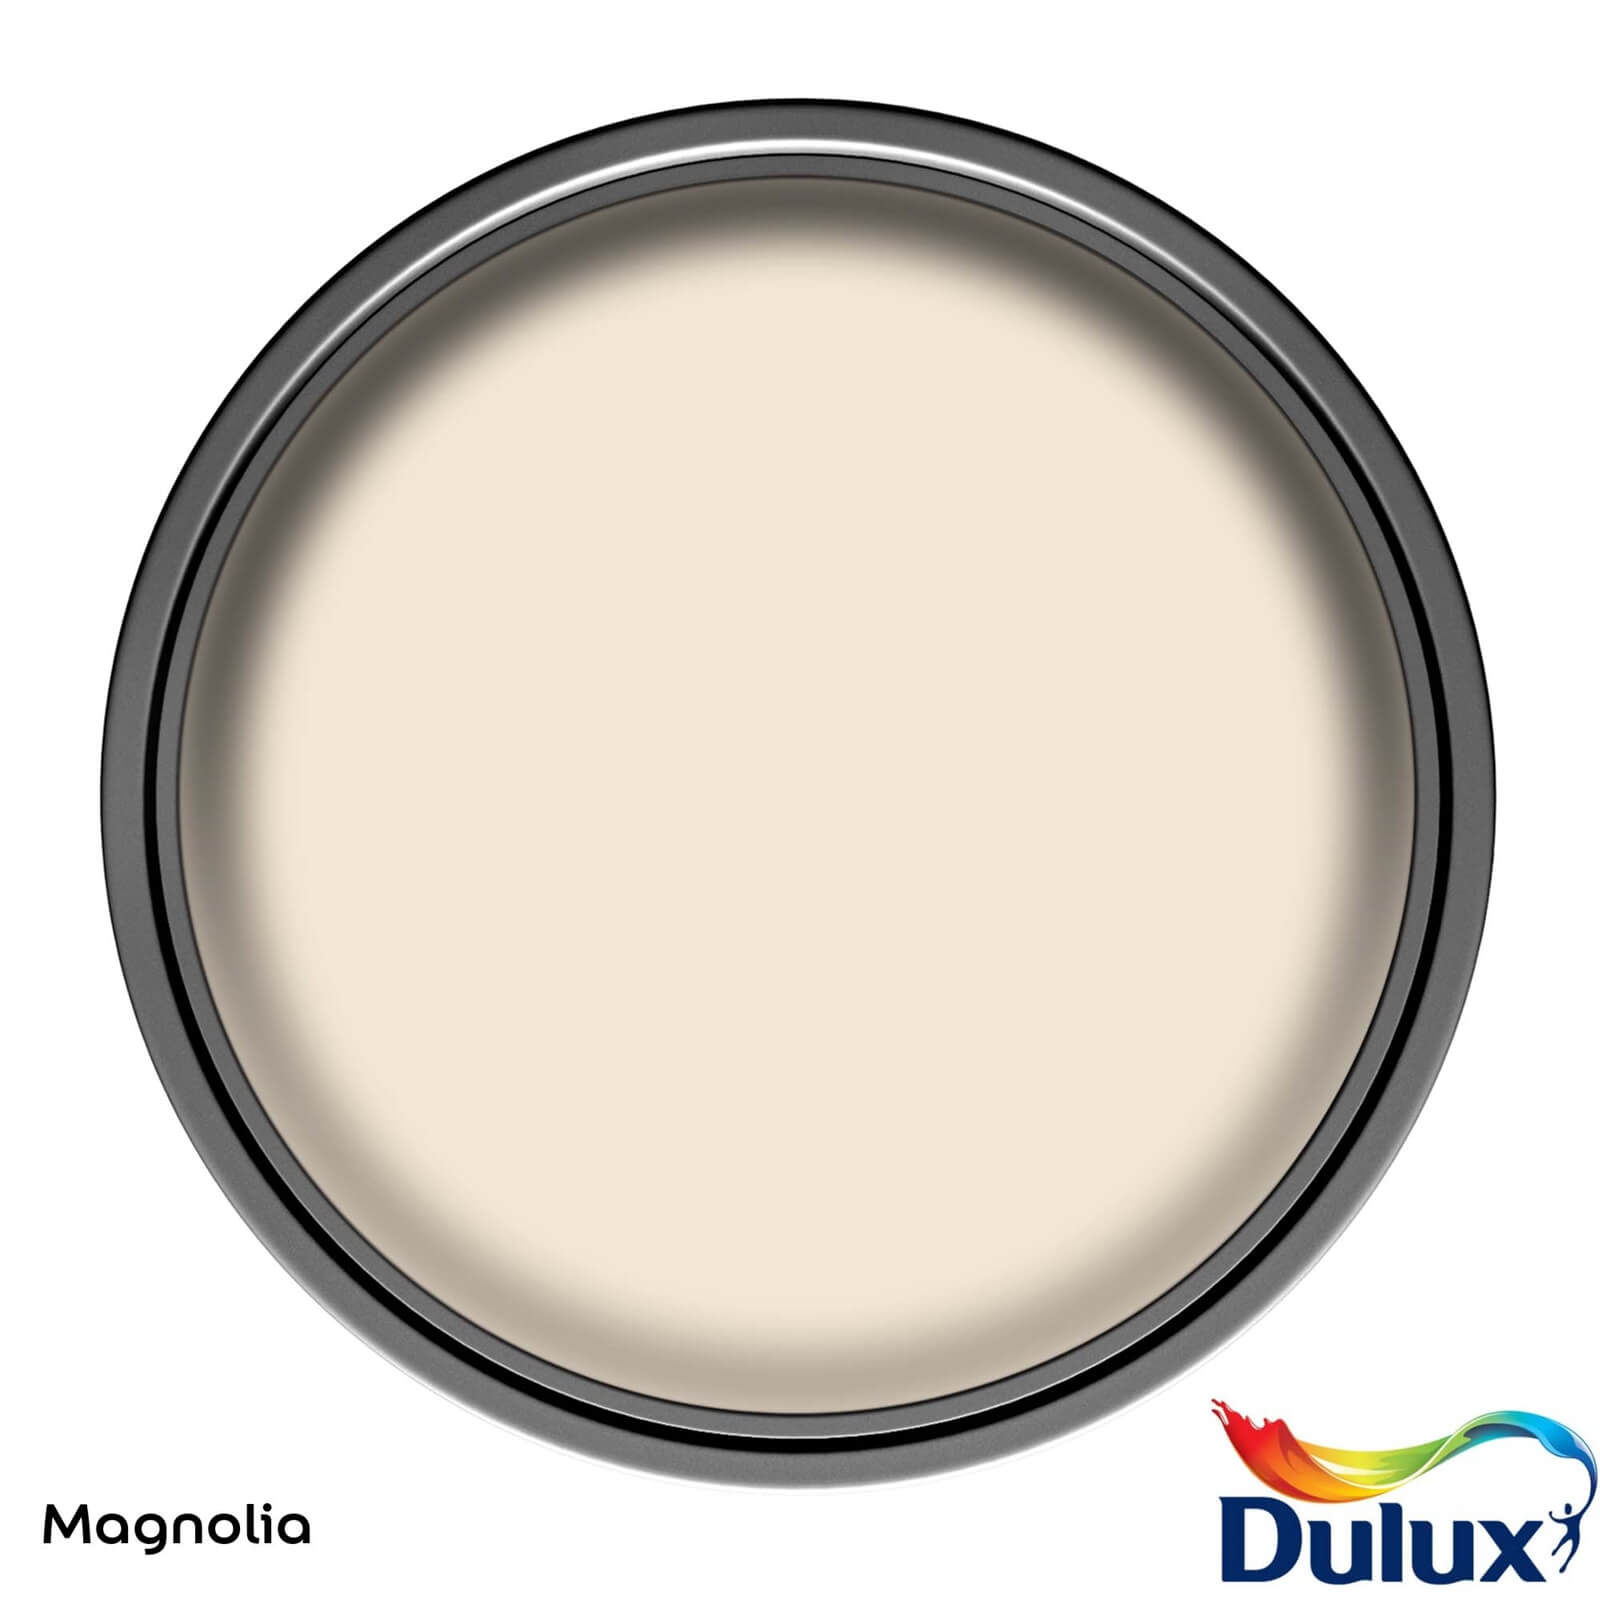 Dulux Easycare Washable & Tough Matt Paint Magnolia - 5L